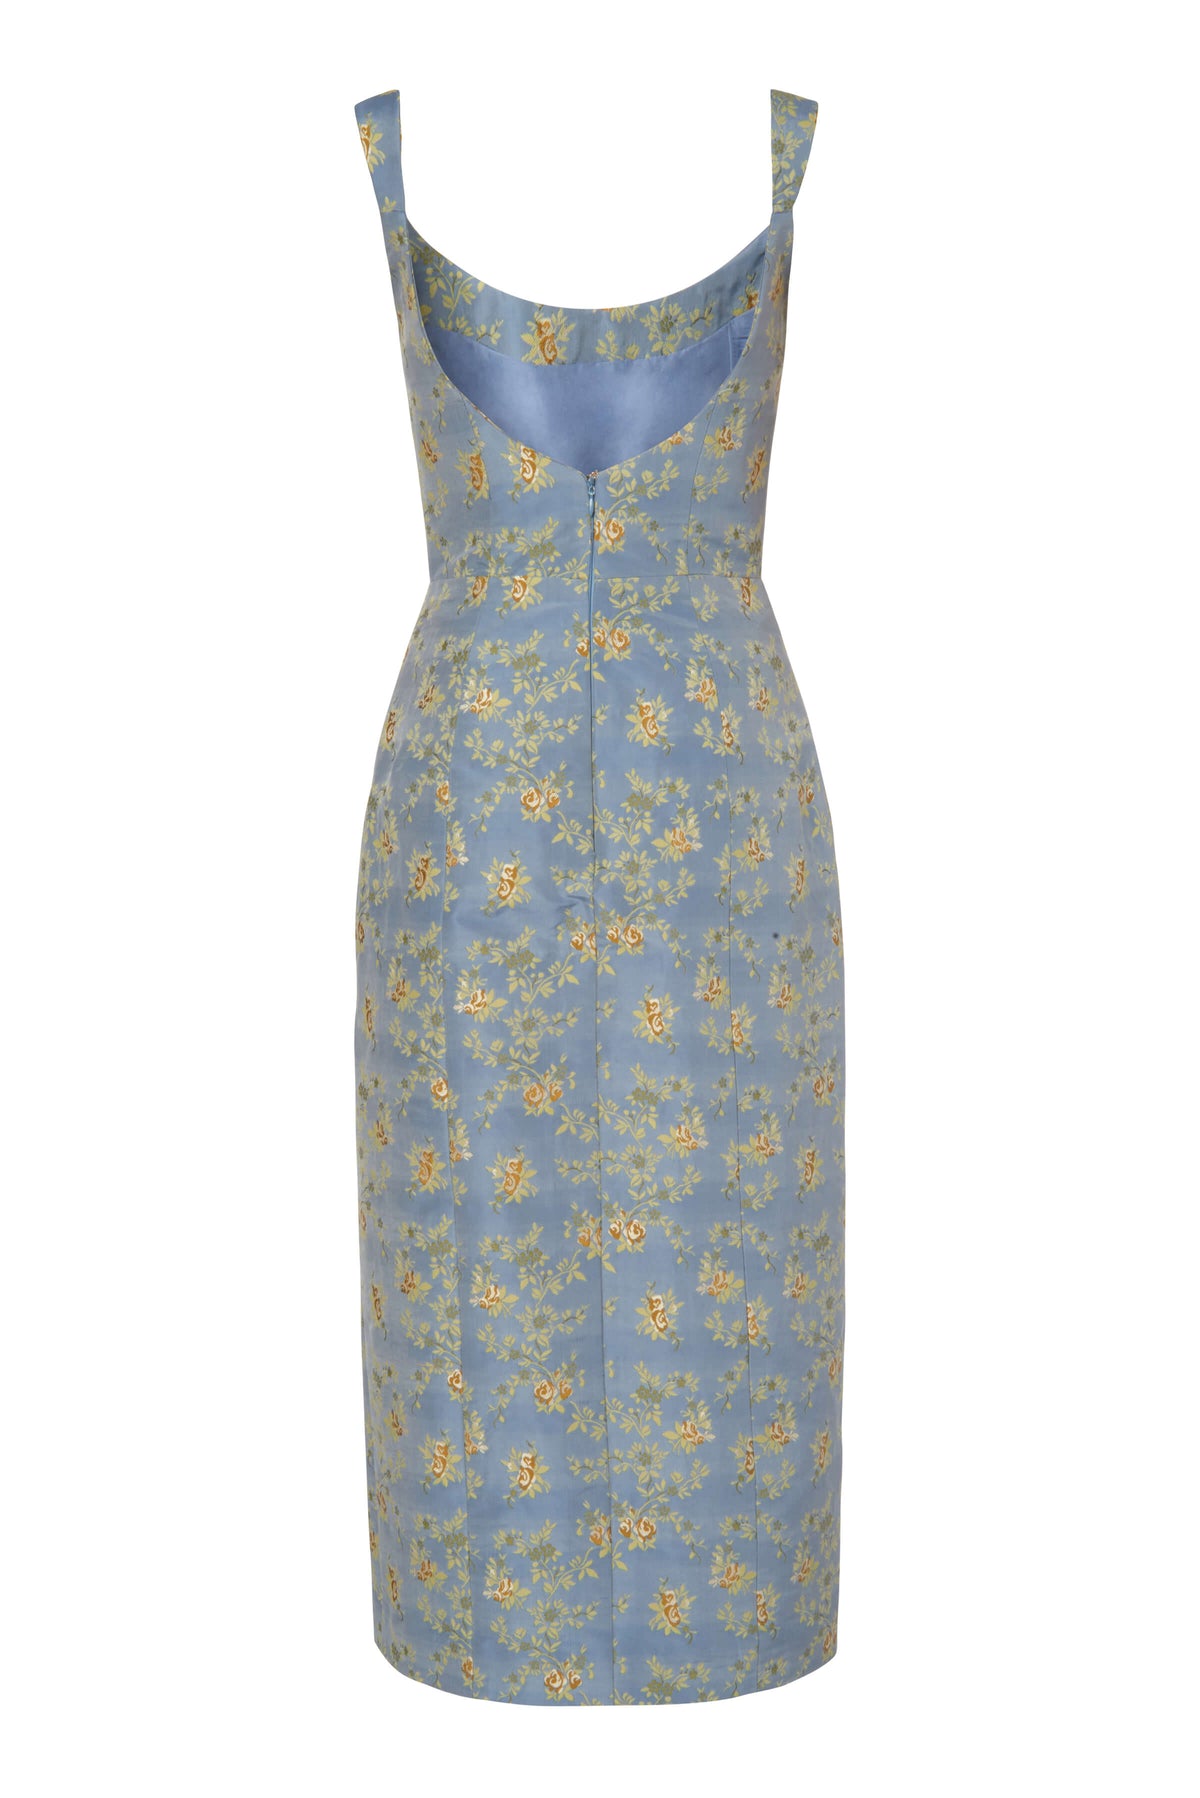 Claudette Blue Floral Brocade Corset Dress